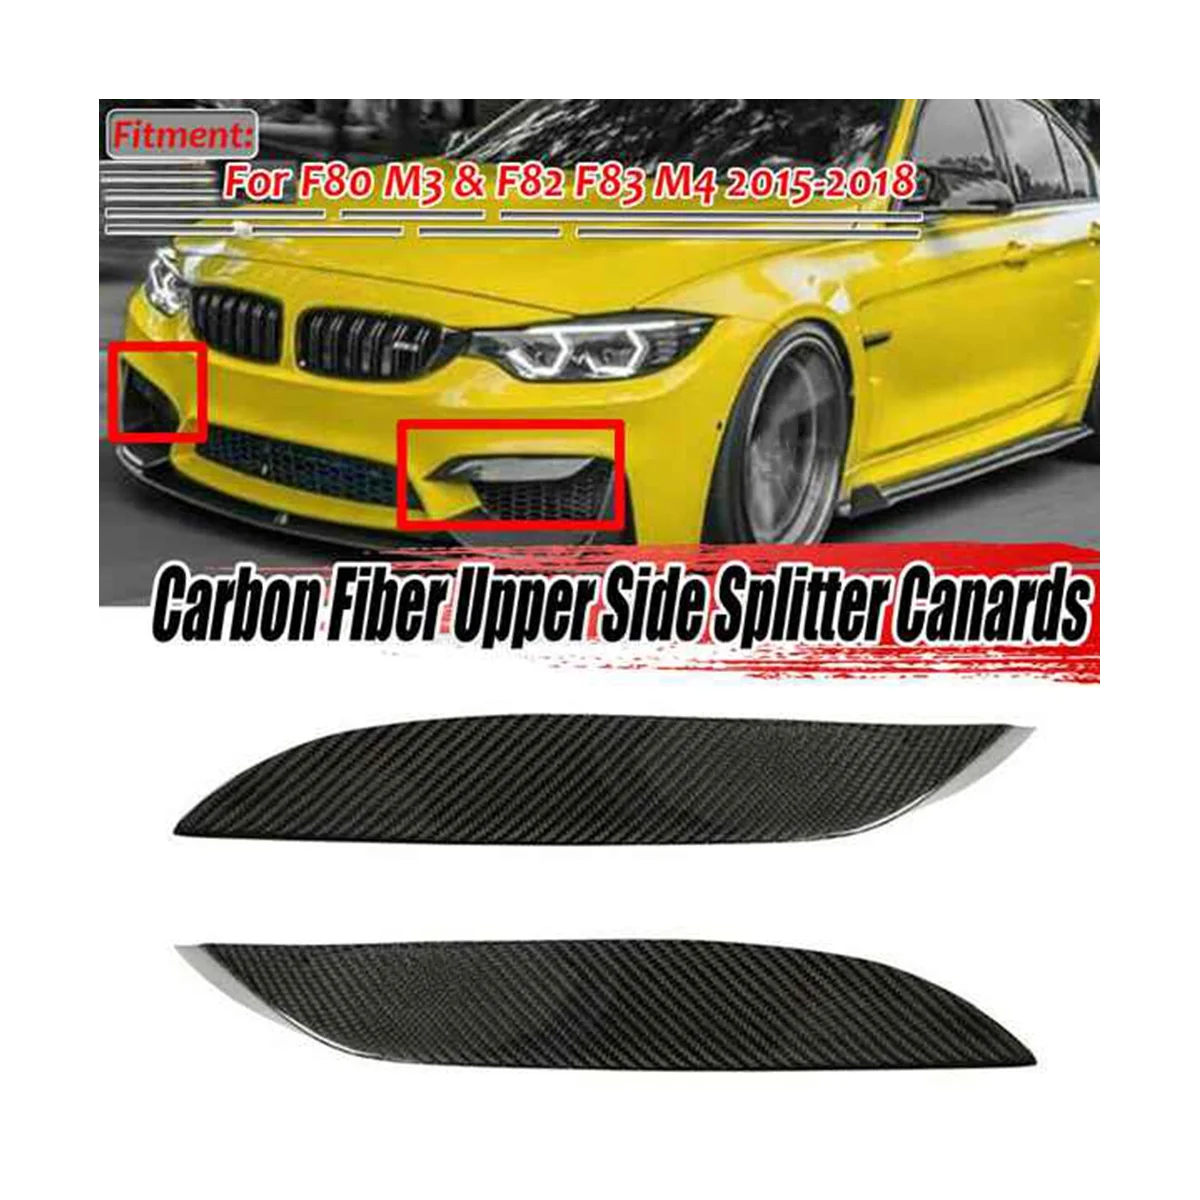 

Real Carbon Fiber Front Bumper Side Splitter Canards Lip Spoiler for BMW F80 M3 F82 F83 M4 2015-2018